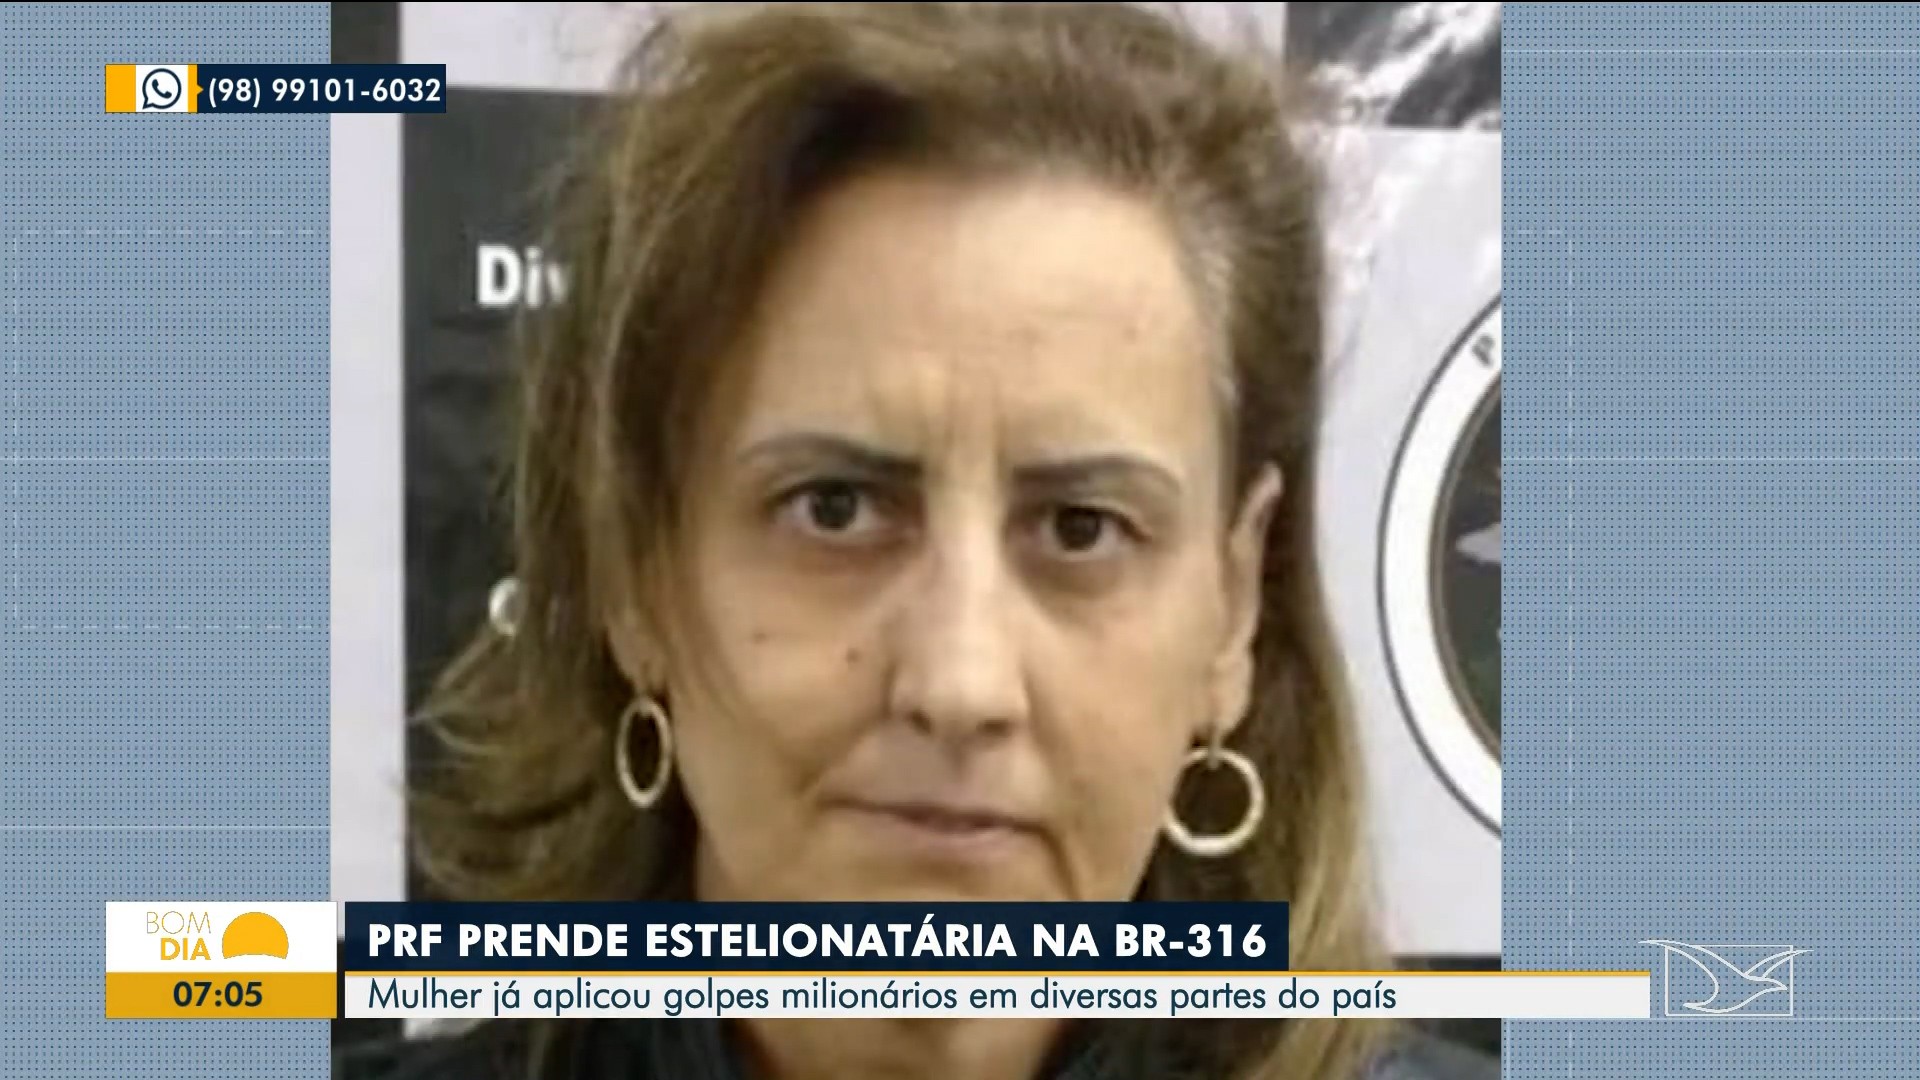 Presa no MA mulher apontada como uma das maiores estelionatárias do Brasil; suspeita gerou prejuízo de mais de R$ 1 milhão 